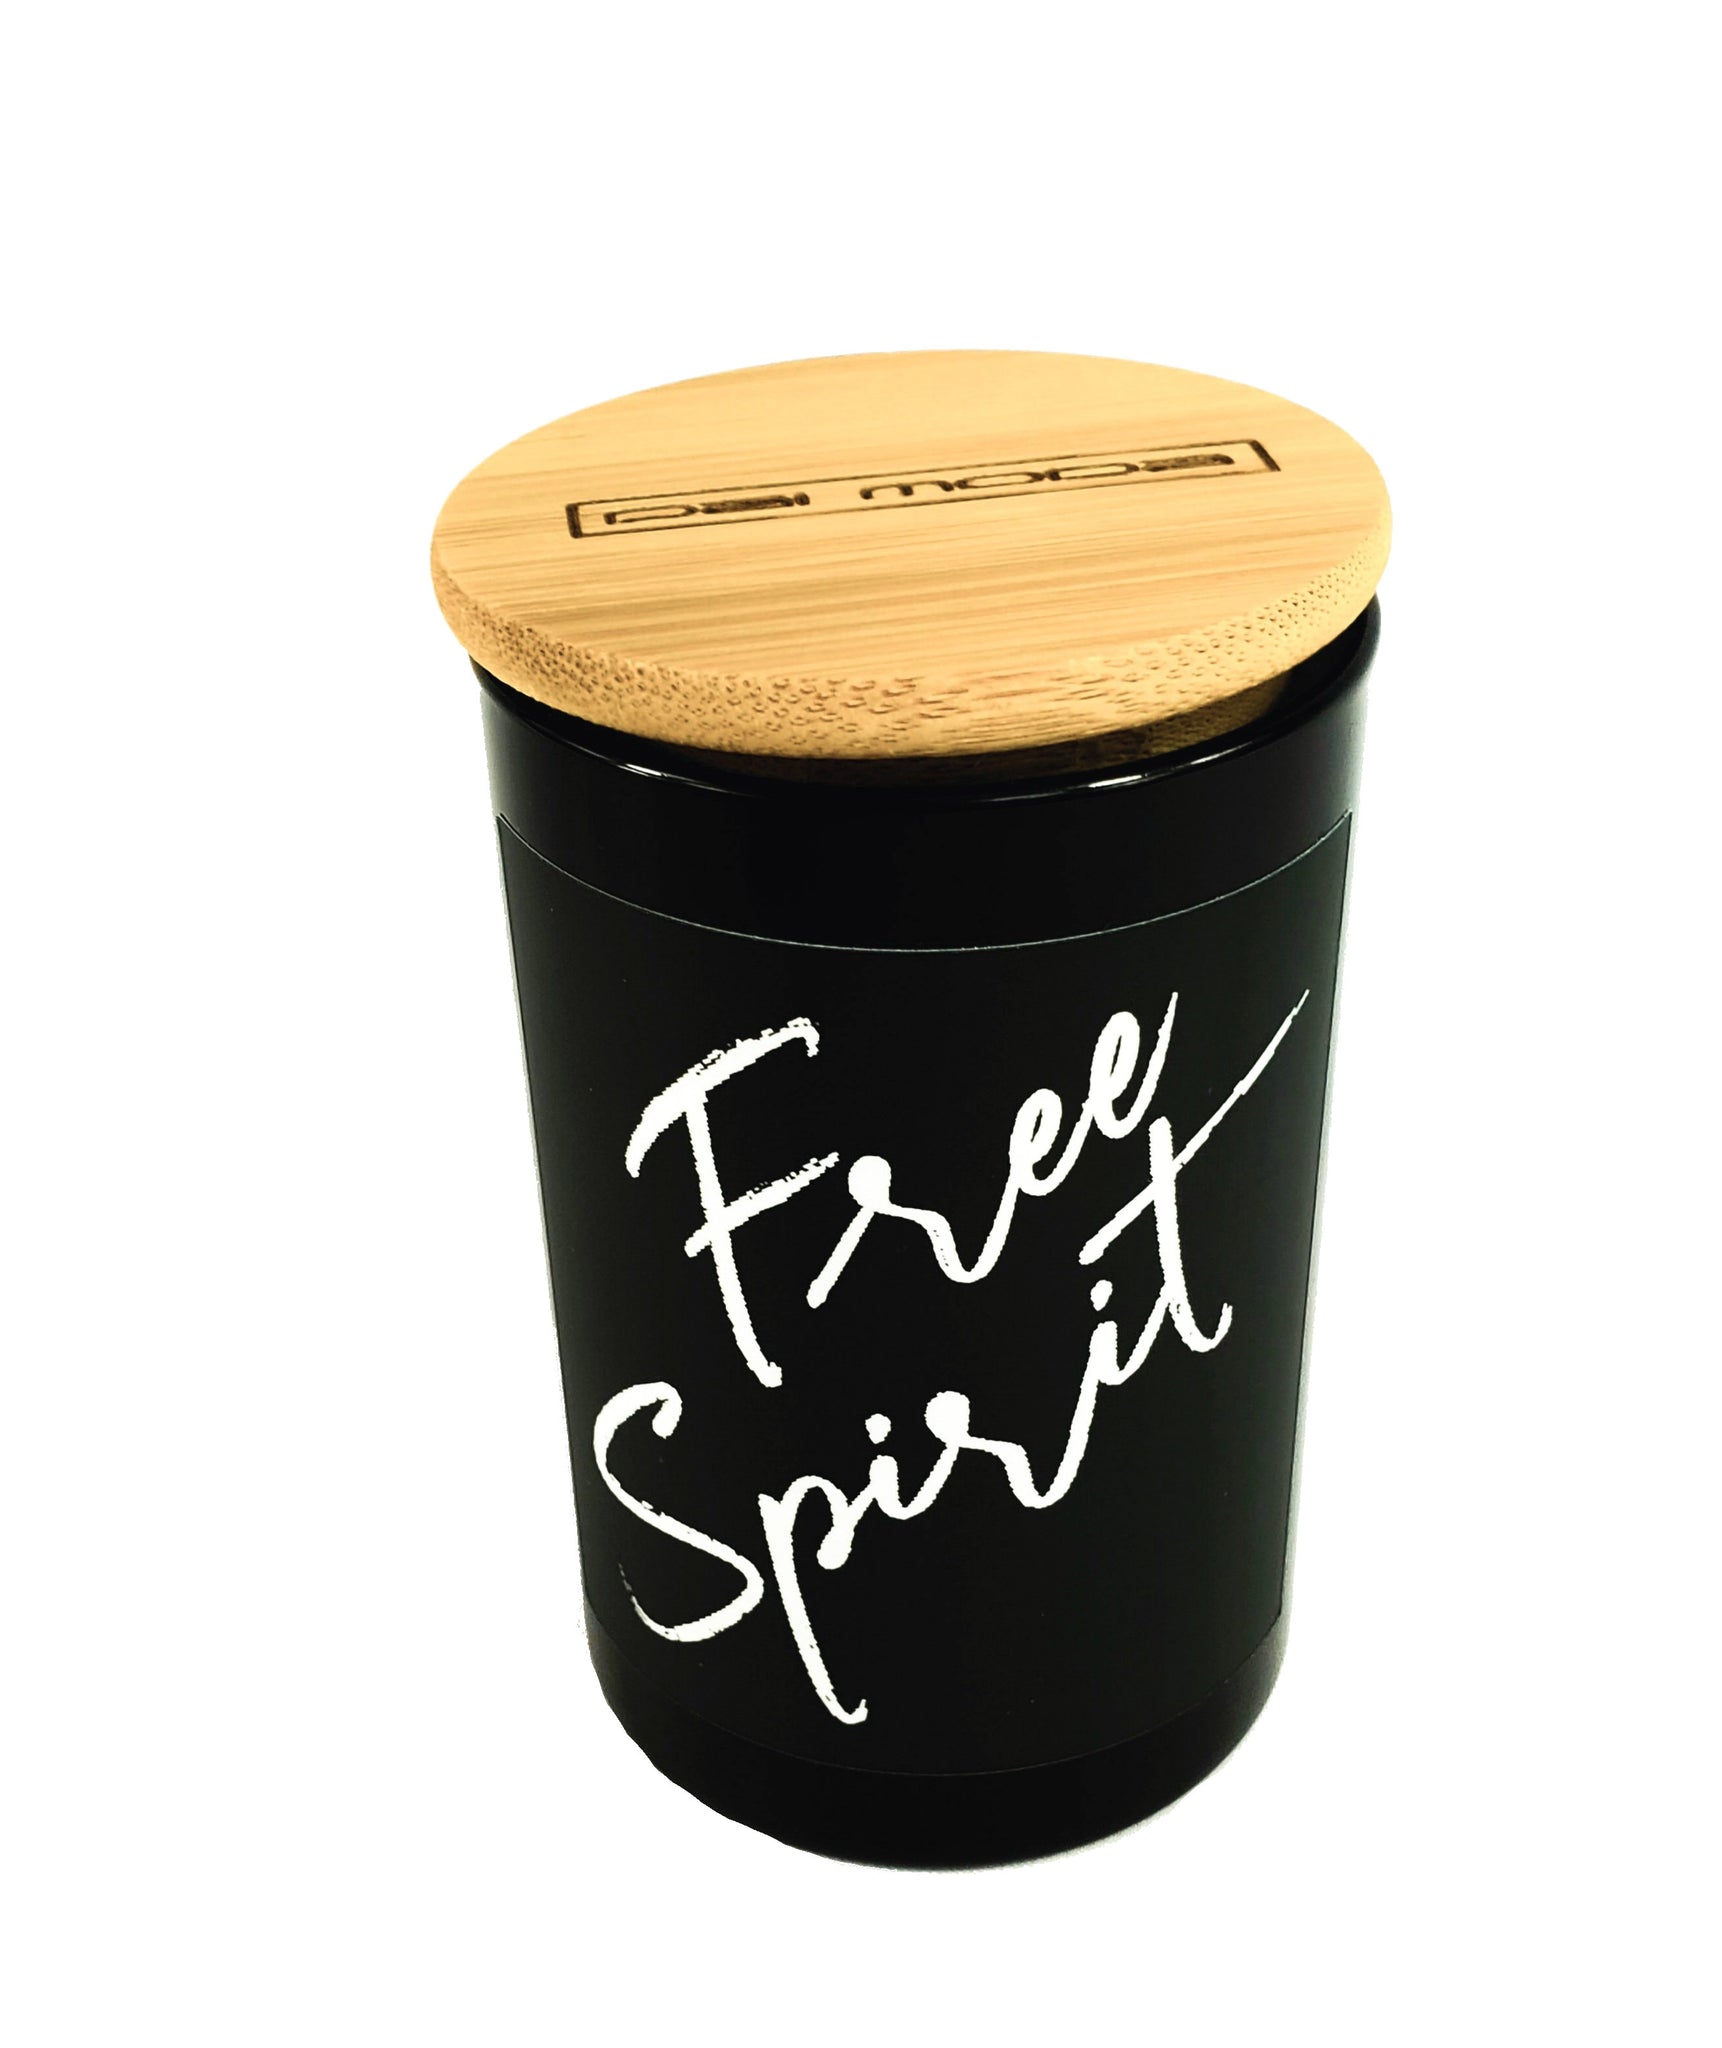 Free Spirit 8oz Candle